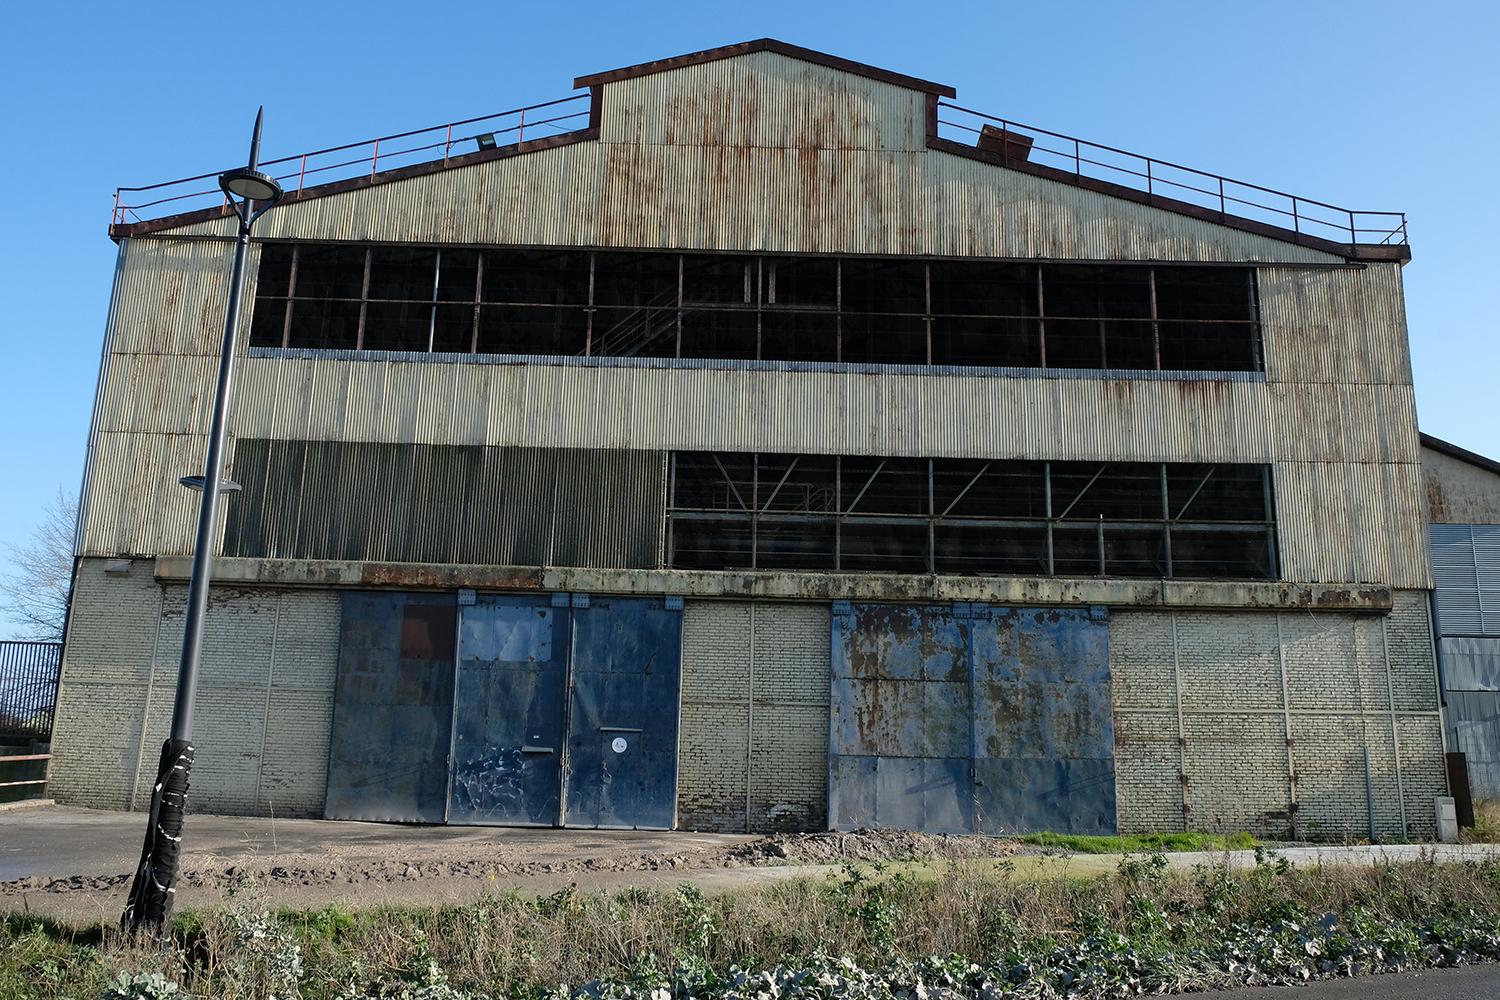 La ville de Denain comptait 15 fosses d’extraction minière, mais aussi l’usine Usinor-Denain, une usine sidérurgique, fondée en 1839 et fermée définitivement en 1988. 